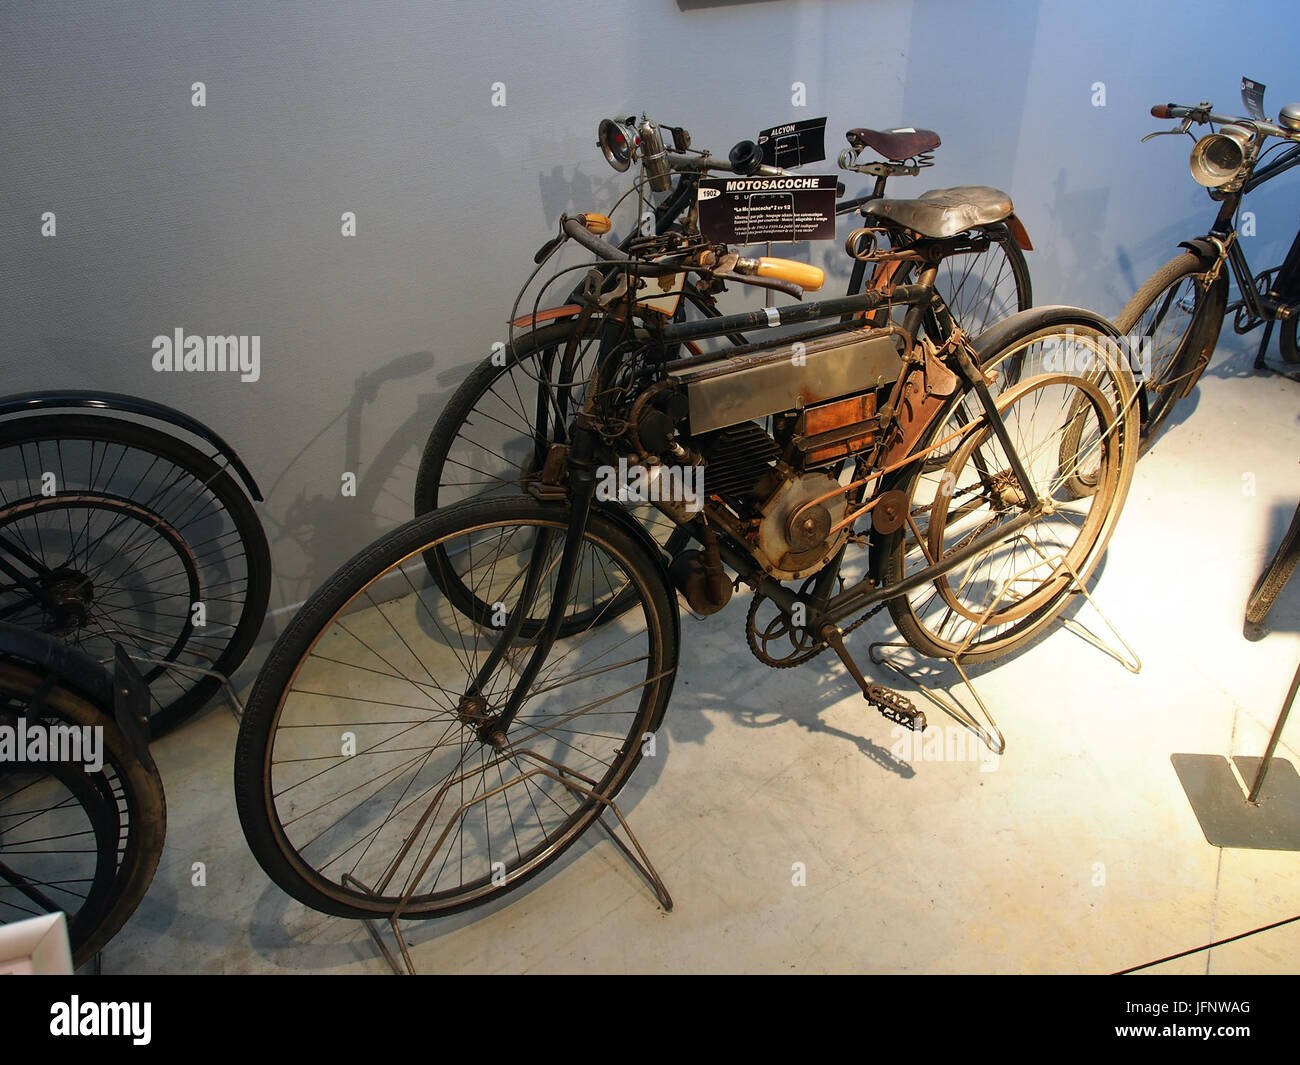 1902 Motosacoche, Musée de la Moto et du Vélo, Amneville, France, pic-025 Stock Photo